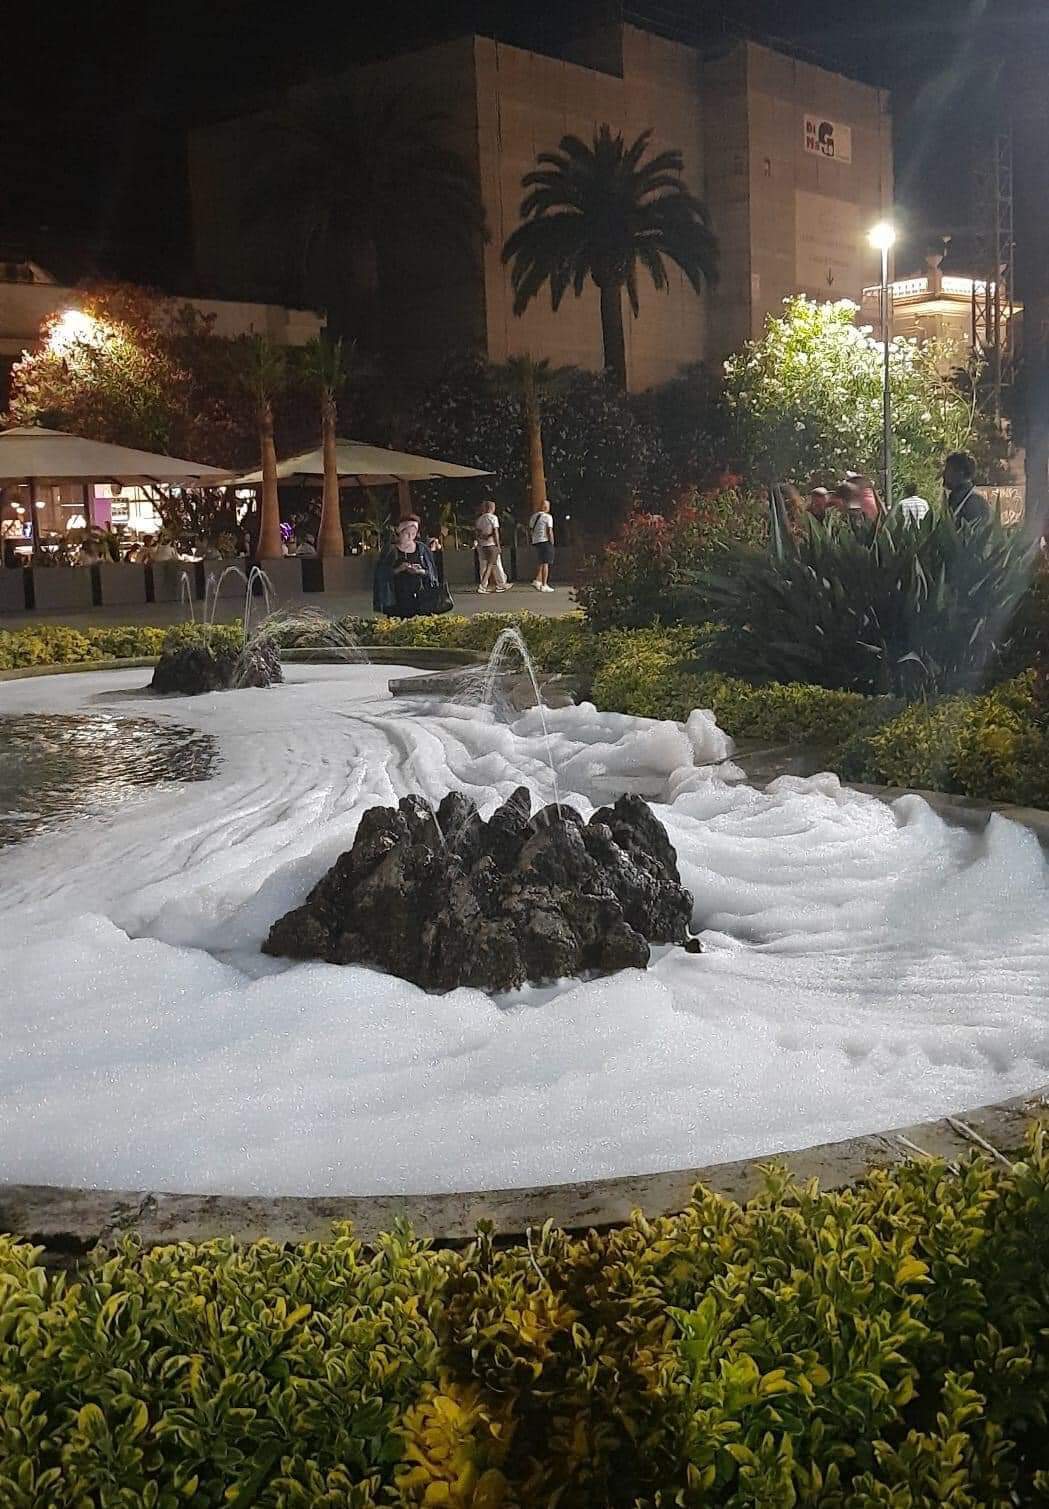 L’acqua si trasforma in schiuma nella fontana della rotonda Giorgini